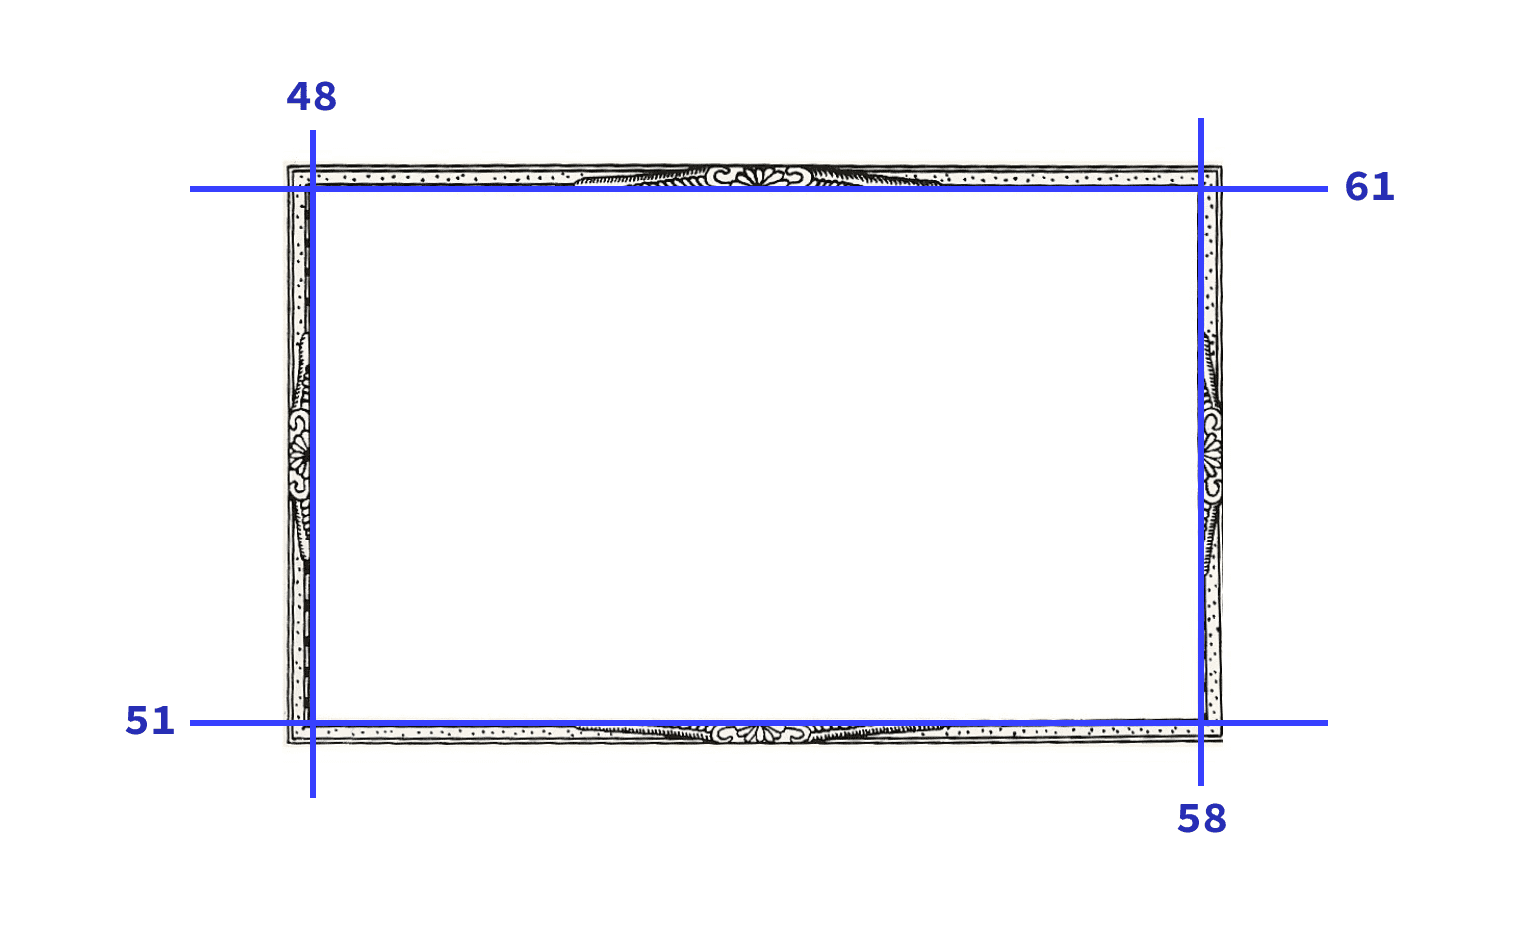 Gambar yang digunakan dalam demo dengan empat irisan yang ditampilkan dengan garis biru